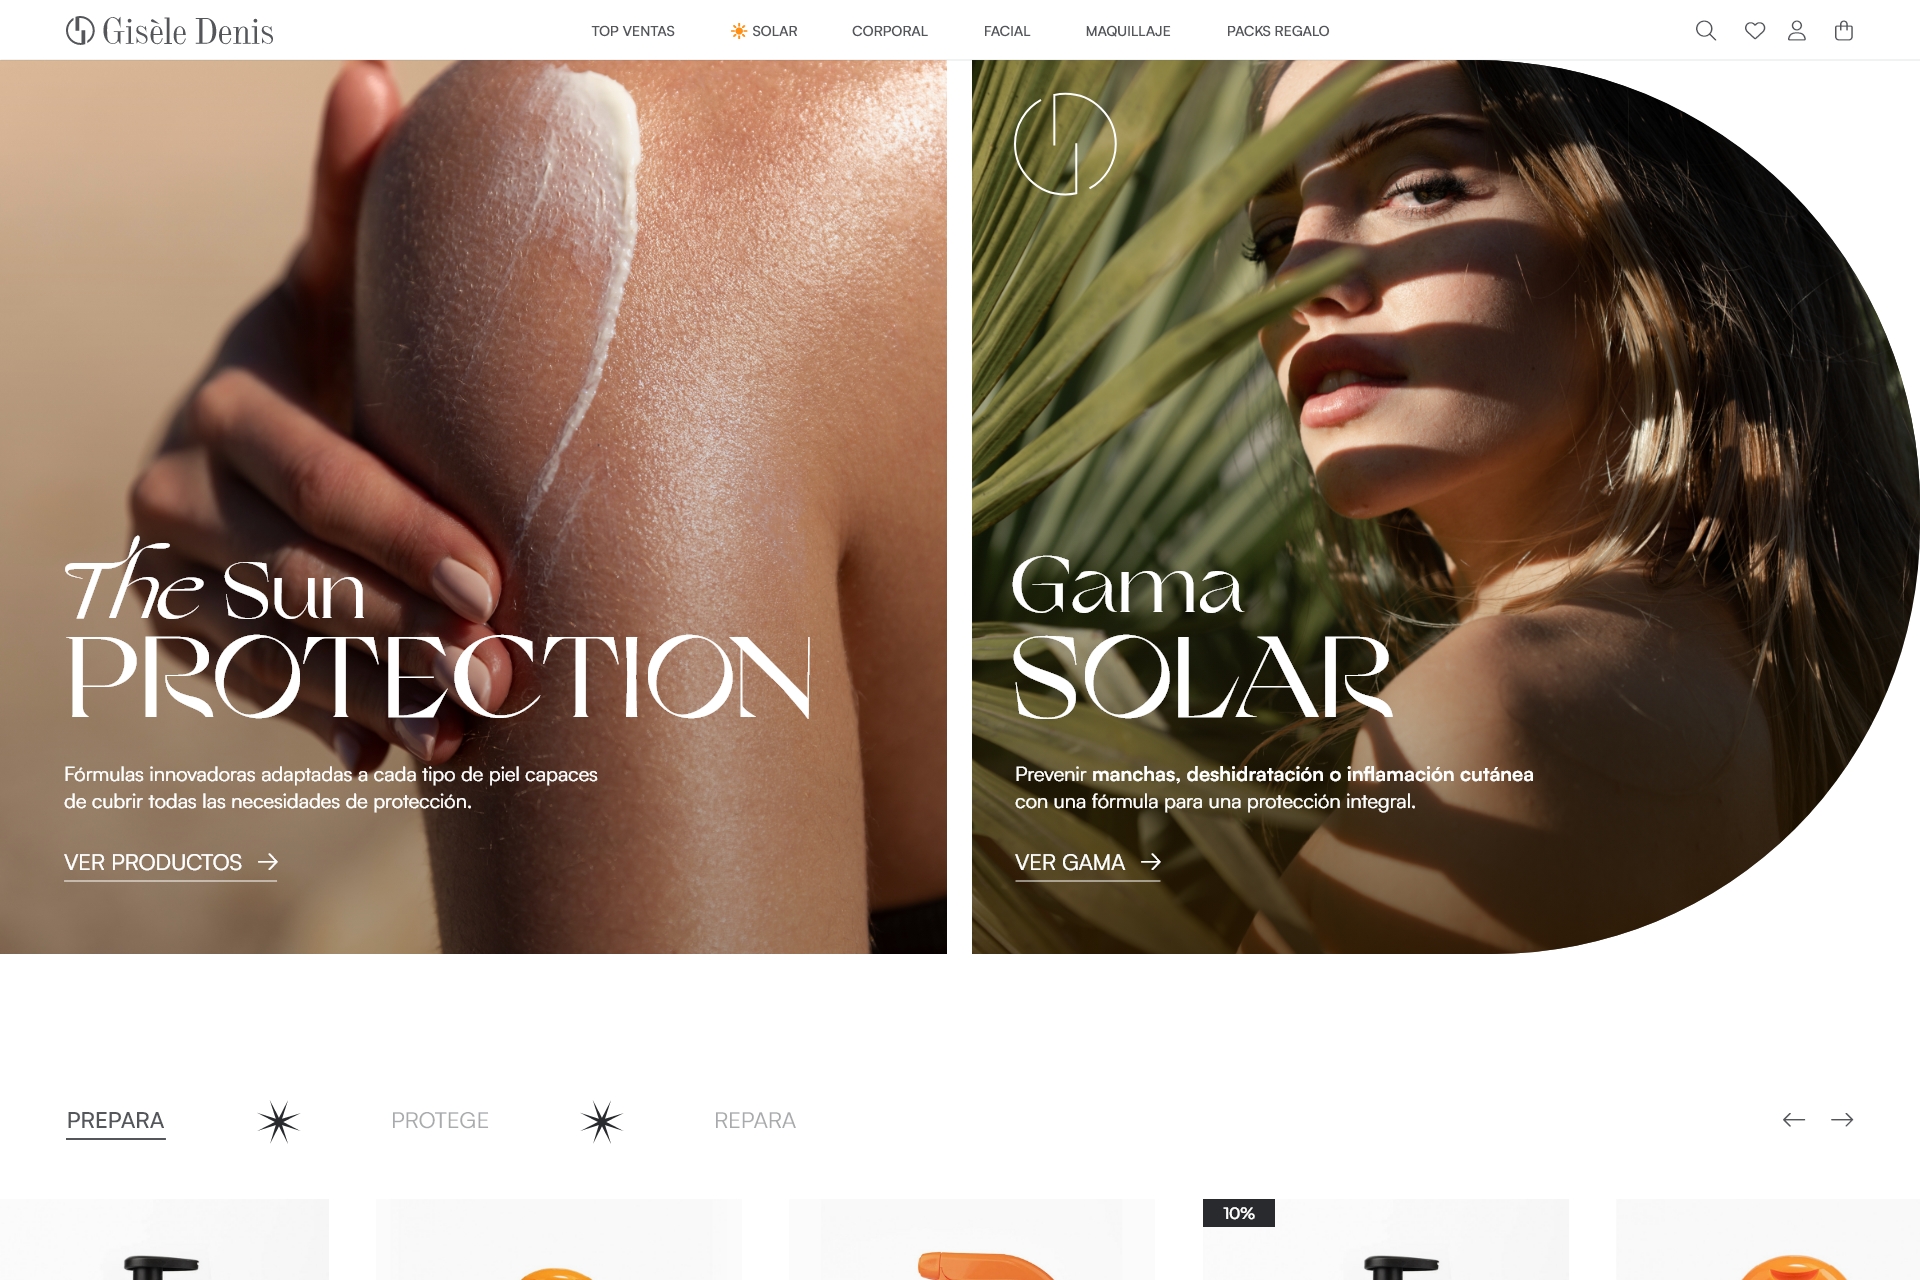 La prestigiosa marca Gisèle Denis confía en SDi para su nuevo proyecto web 1